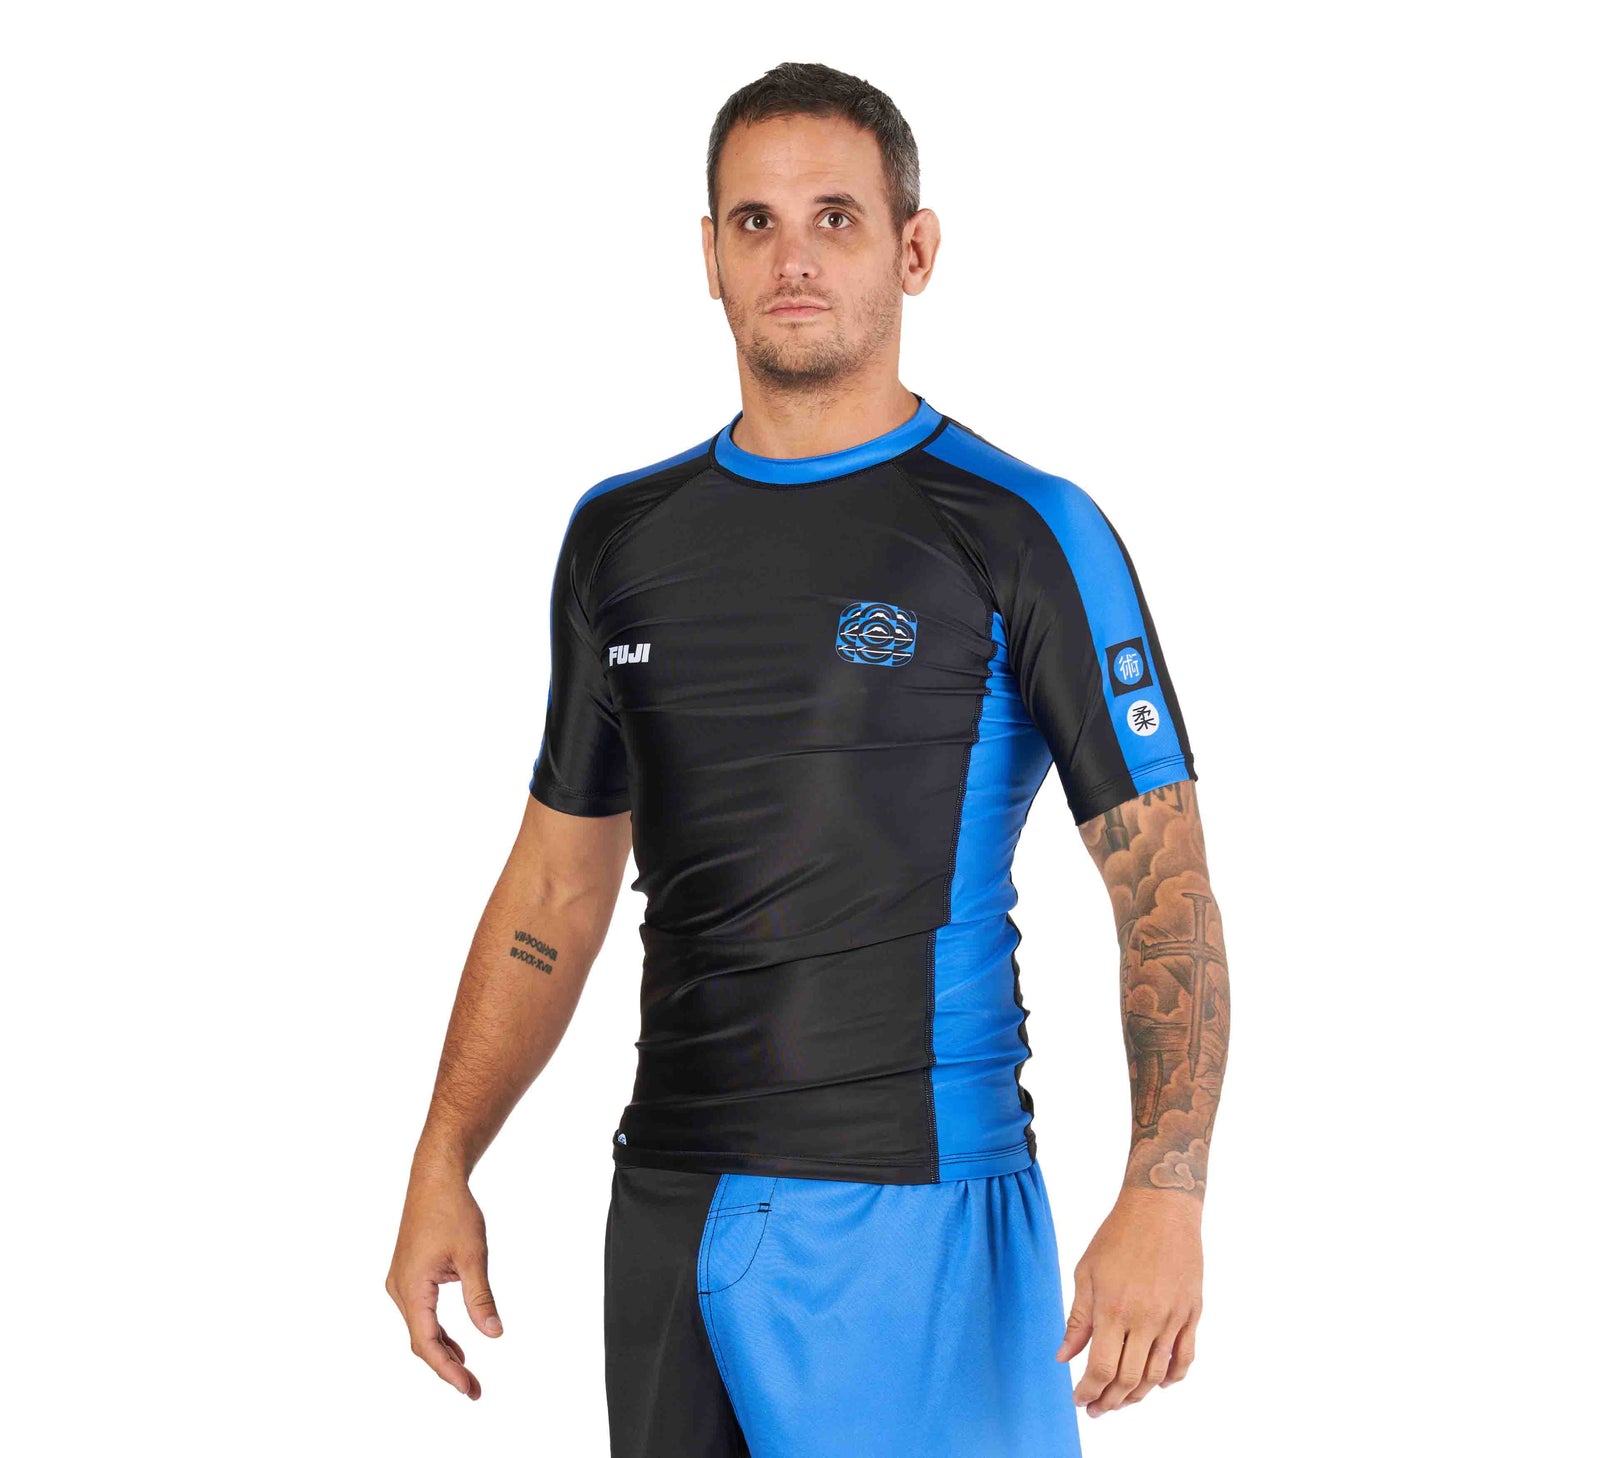 Tapout Technical Rashguard Black/Blue – FUJI Sports